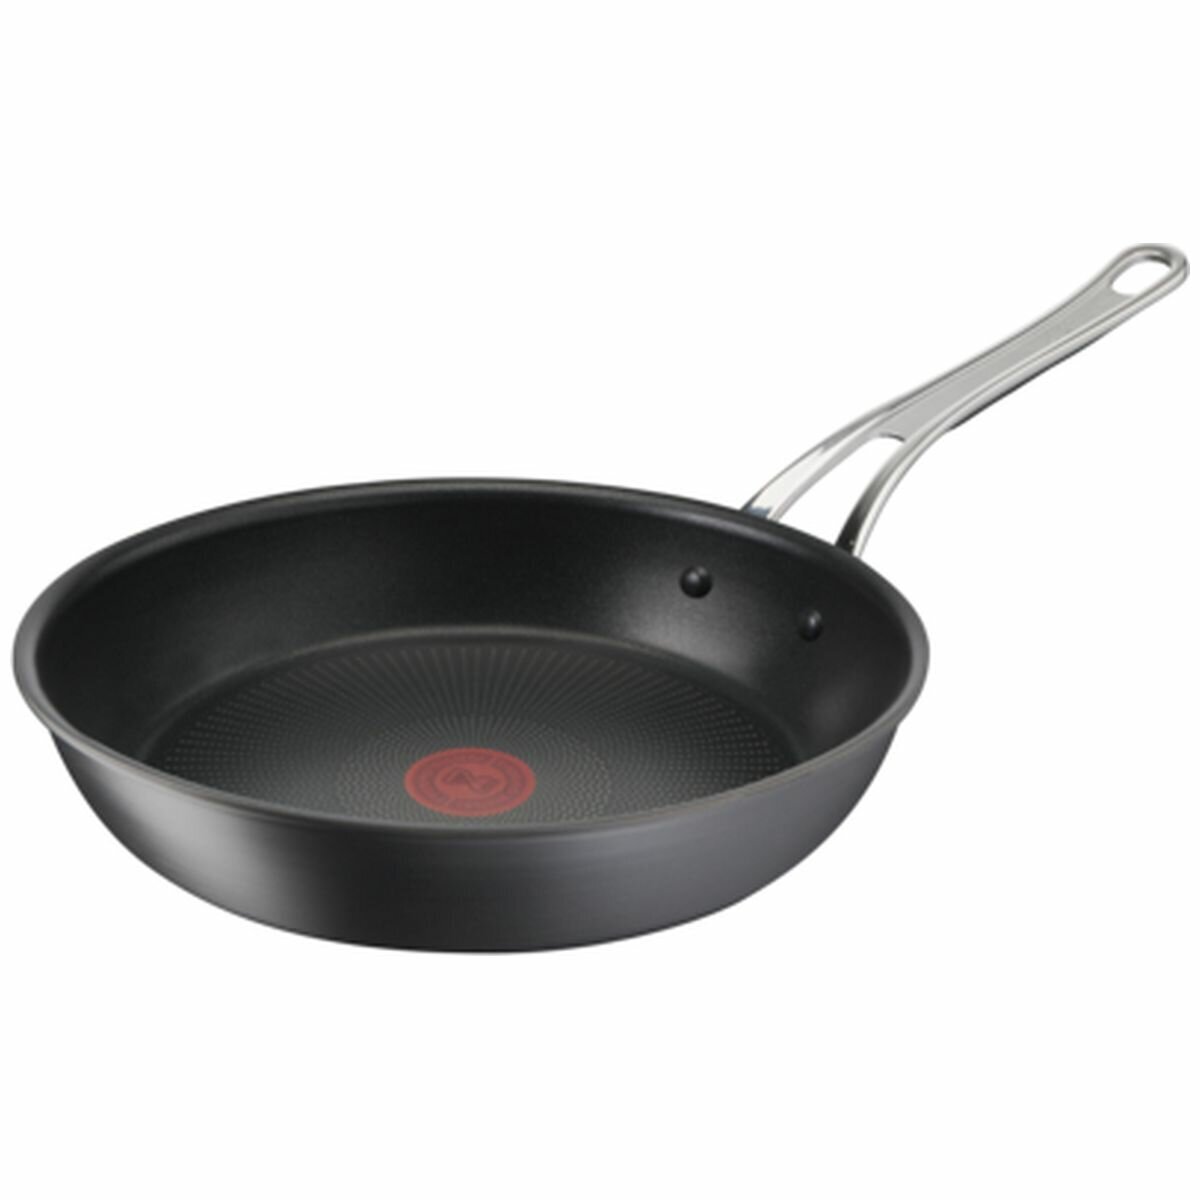 Tefal Titanium Excellence Frying Pan 30cm - Non Stick Frying Pans